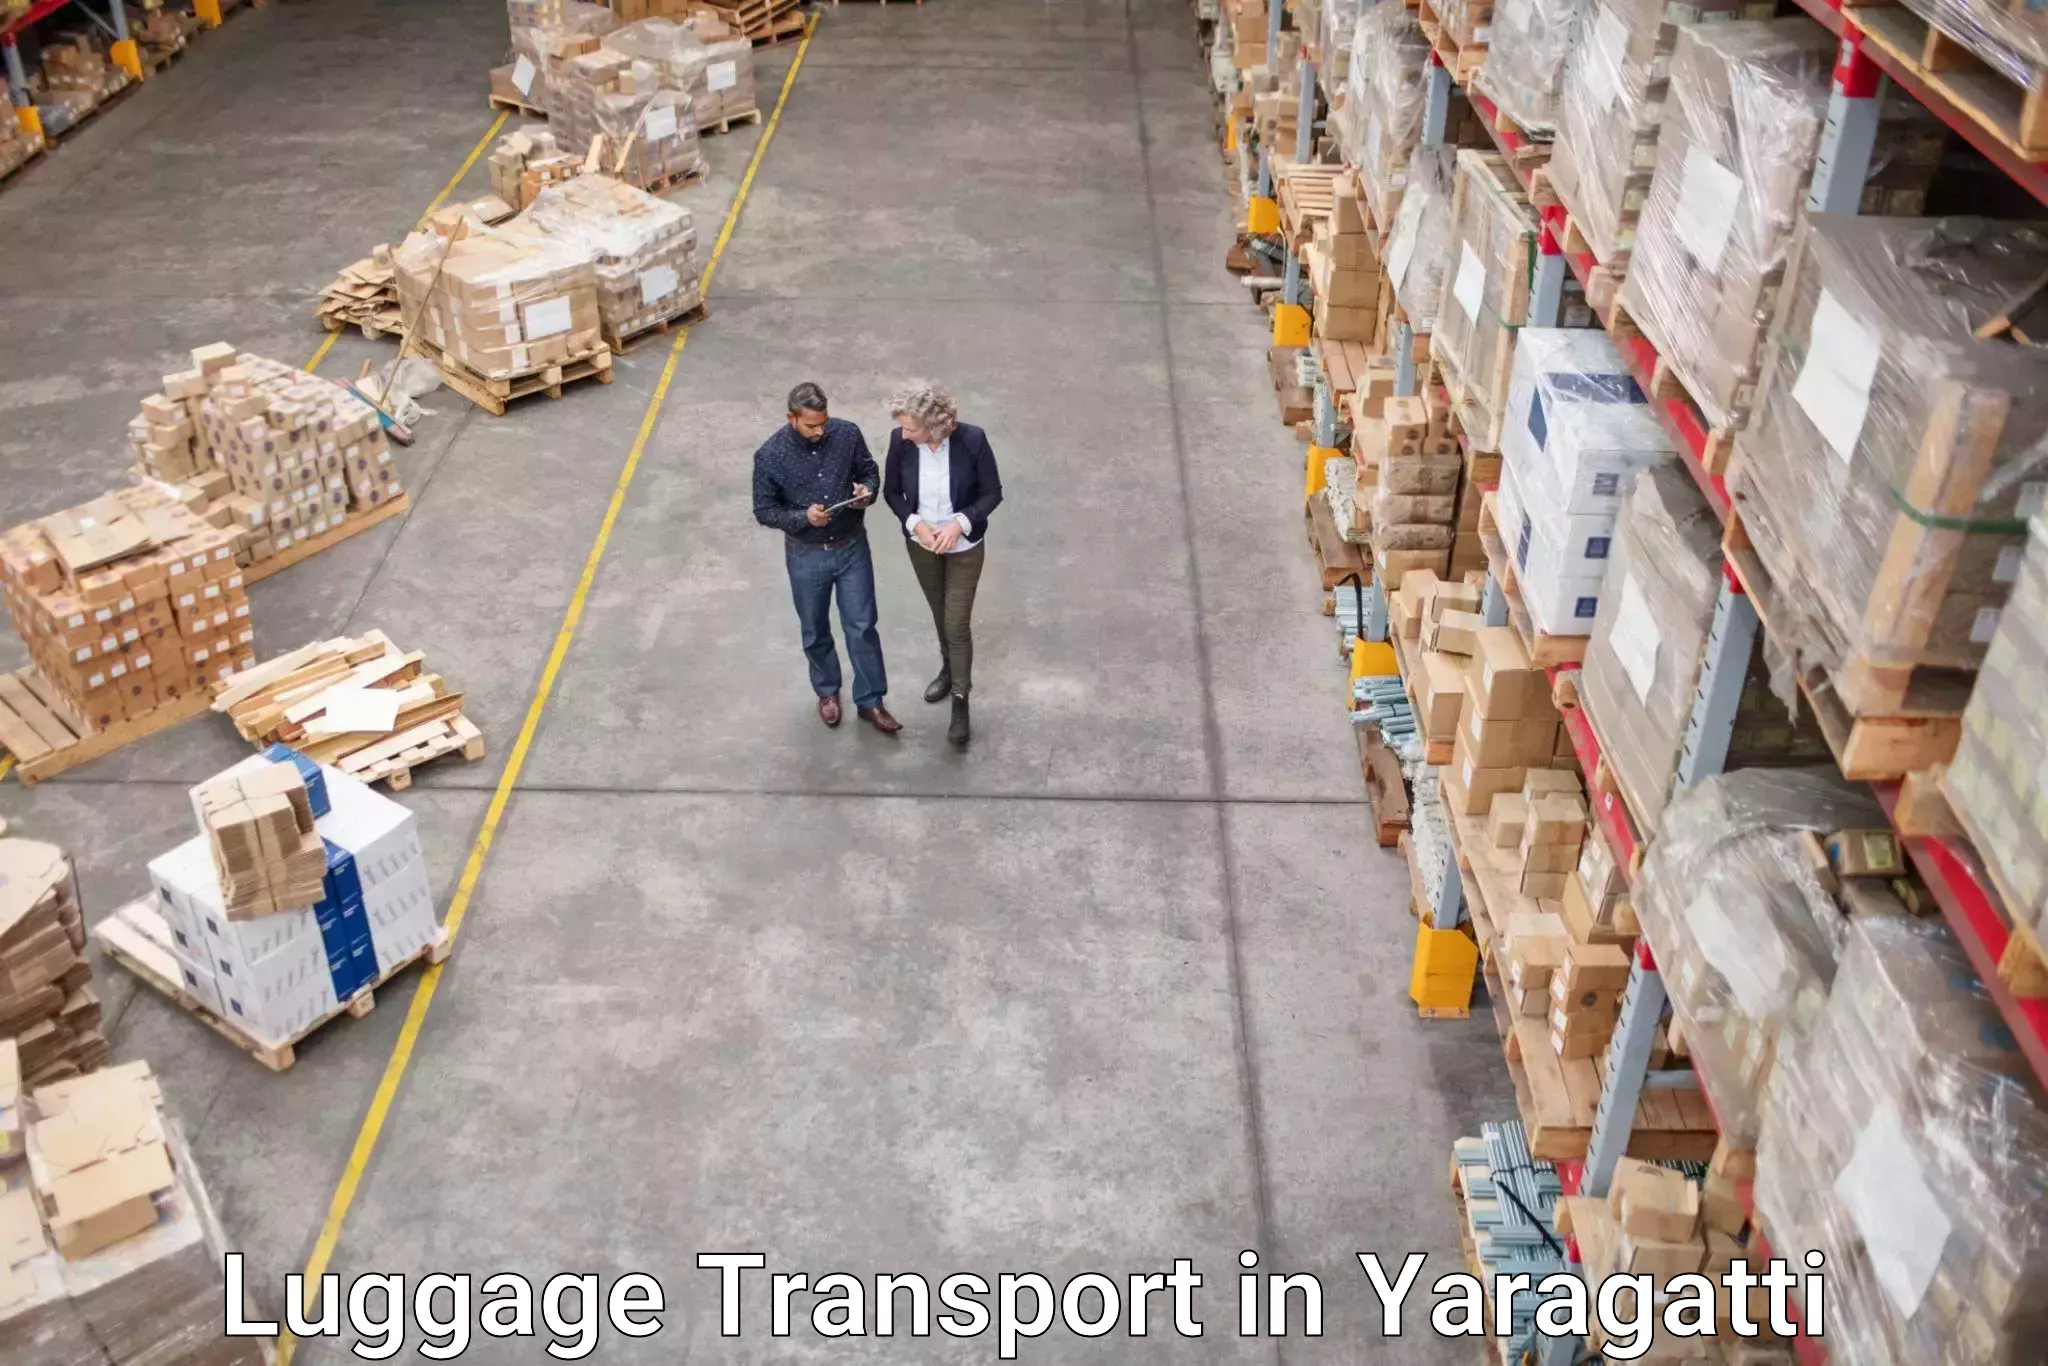 Domestic luggage transport in Yaragatti